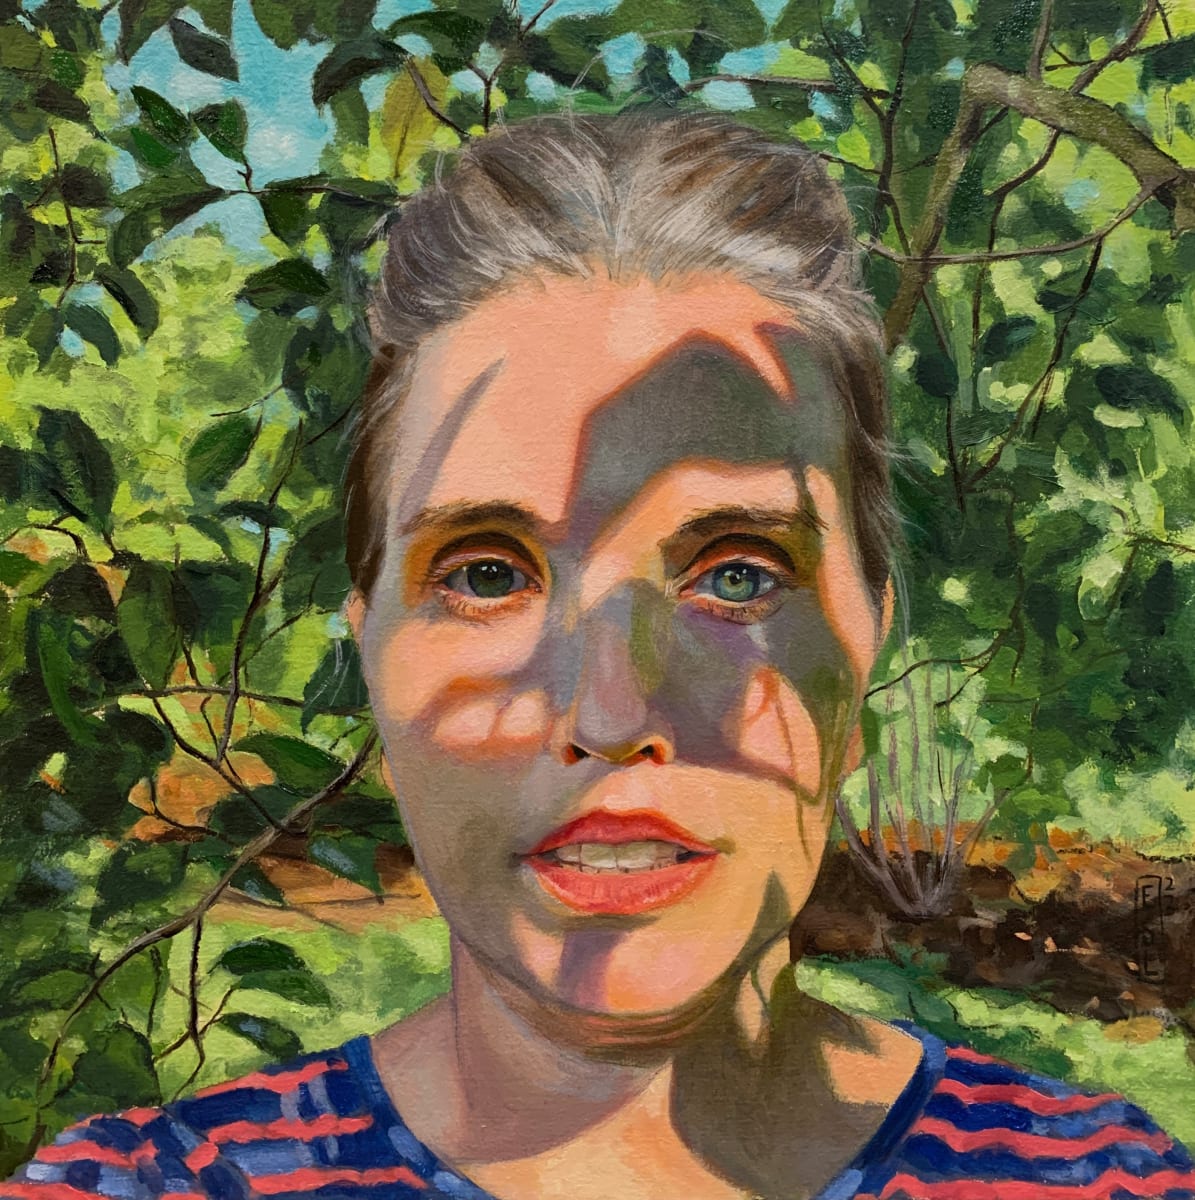 Camouflage by Ellen Starr Lyon  Image: Self-portrait while tree bathing in my backyard